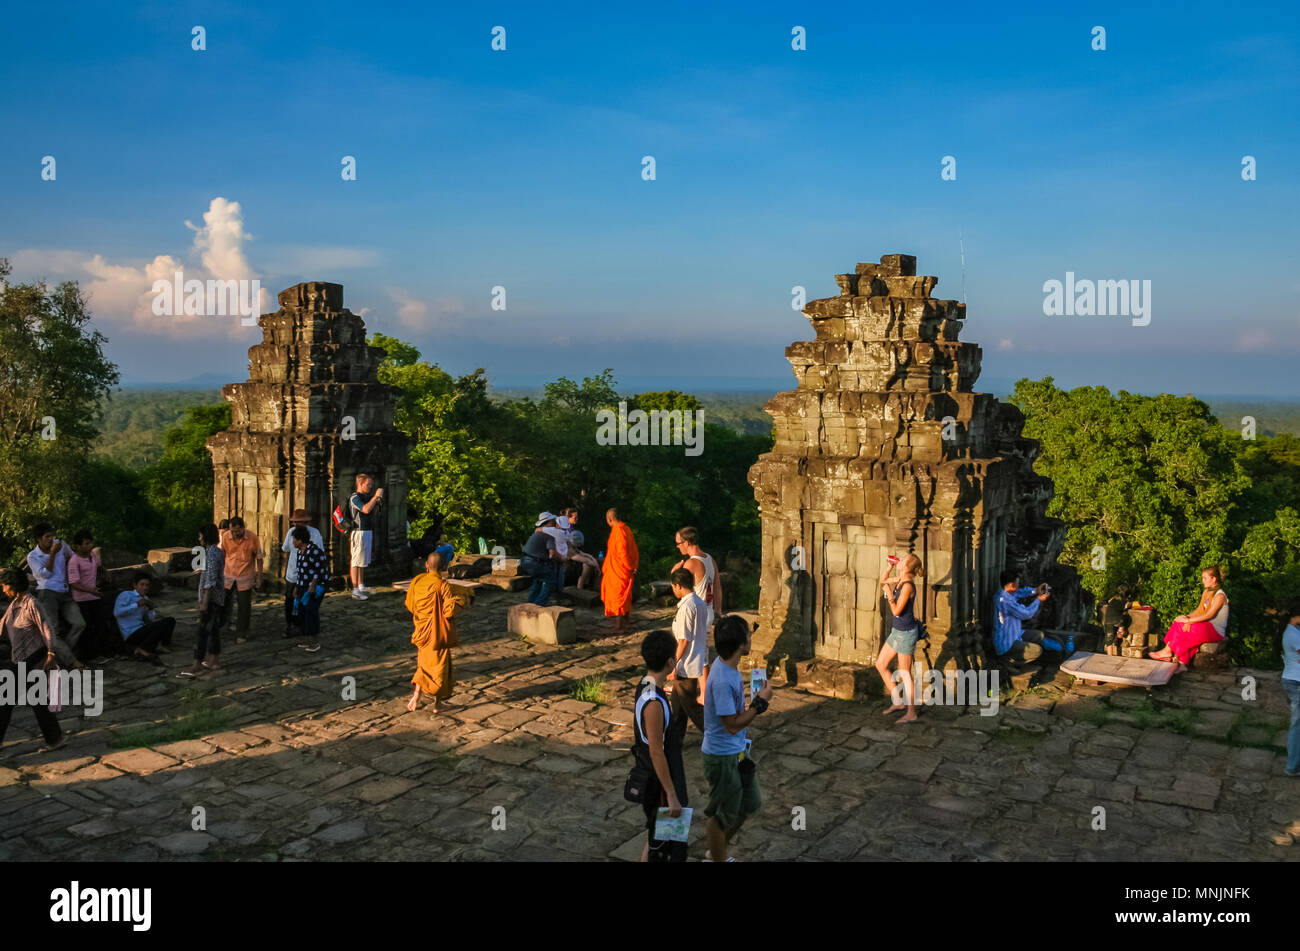 Los turistas esperando en las torres de piedra en la terraza superior del templo de Phnom Bakheng piramidal para ver la vista panorámica de la puesta del sol. Foto de stock